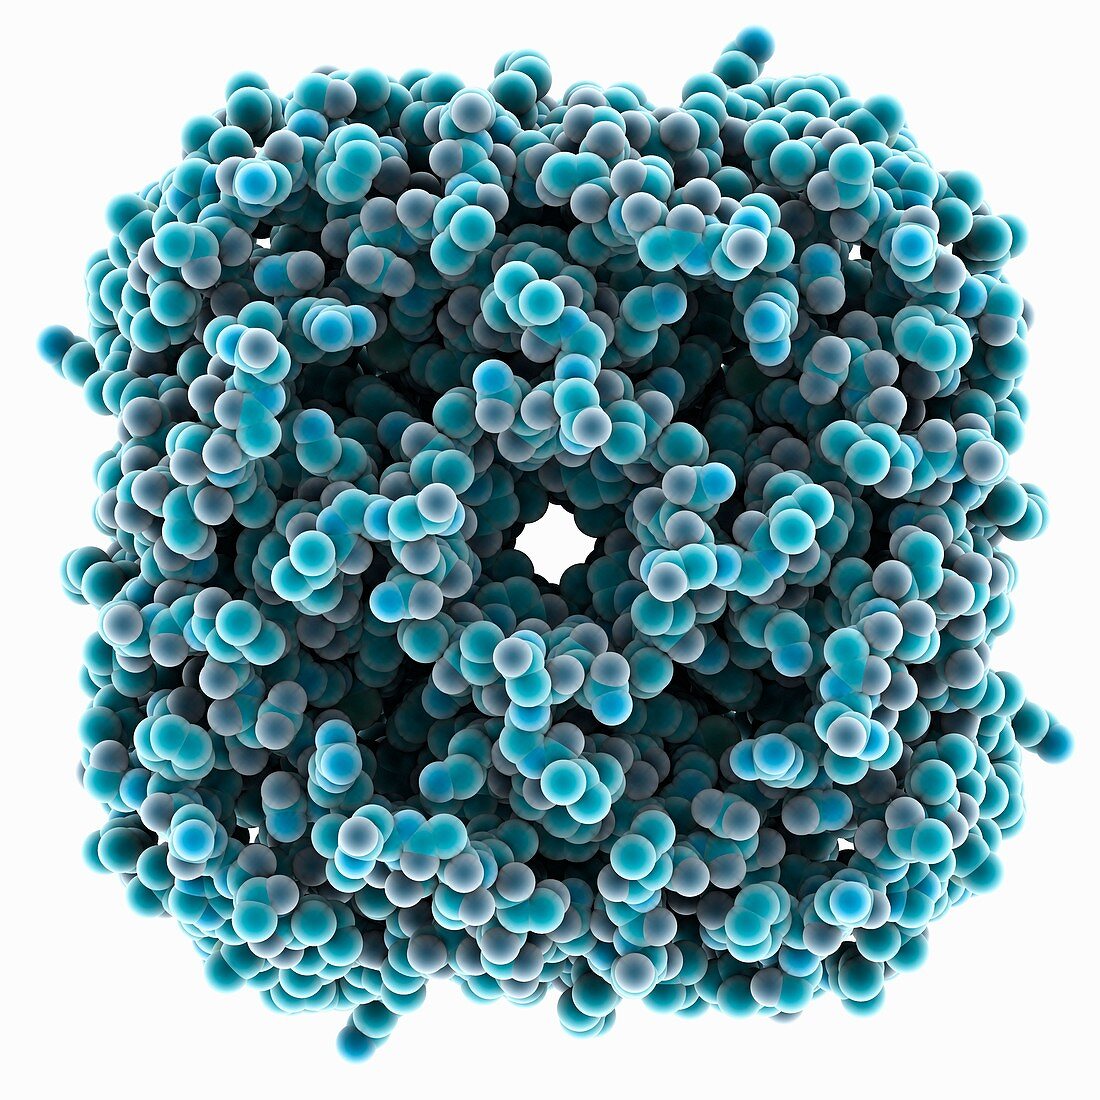 Aquaporin-1 molecule